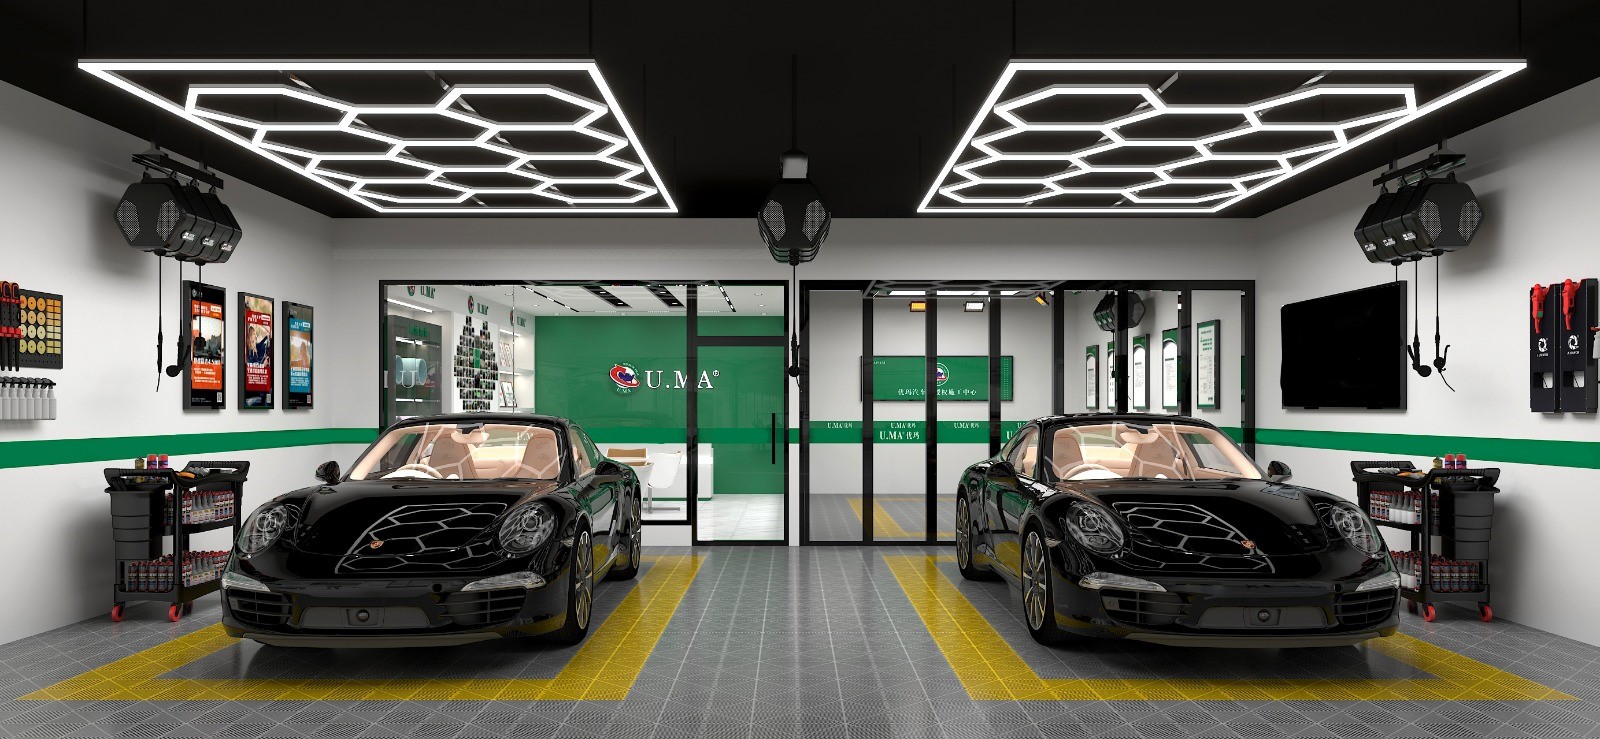 Sechseckige LED-Leuchte Waben-Deckenleuchte 3.6M x 2.4M 330W 6500k  Detailing Garage Barber - Discount AutoSport